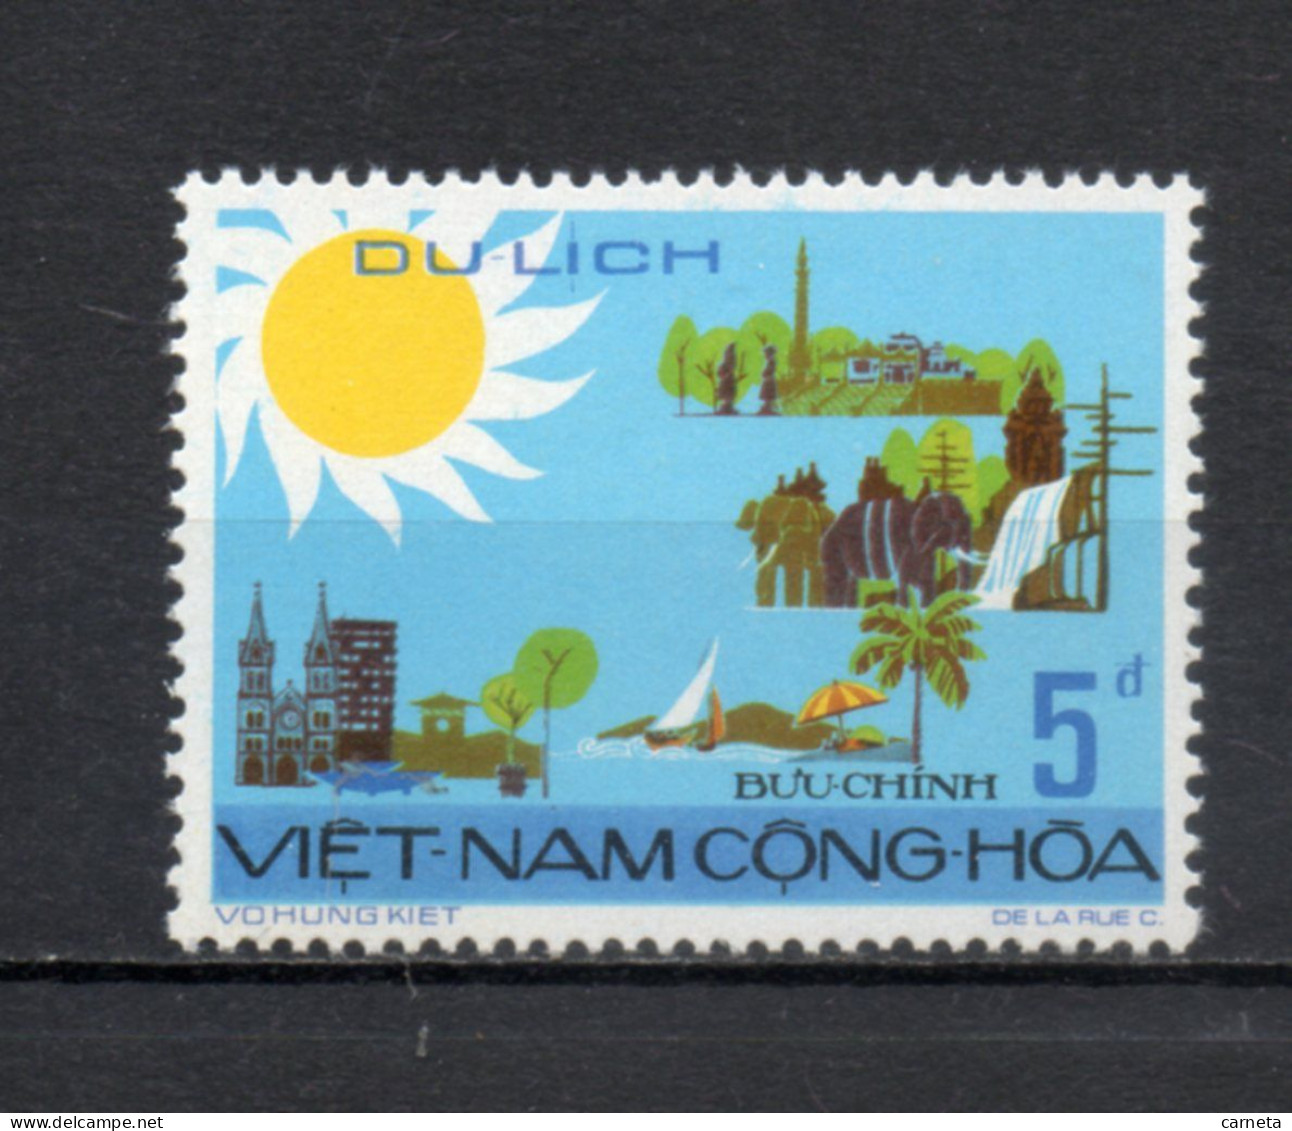 VIETNAM DU SUD   N° 492    NEUF SANS CHARNIERE COTE 1.00€    TOURISME PAYSAGE VOIR DESCRIPTION - Vietnam